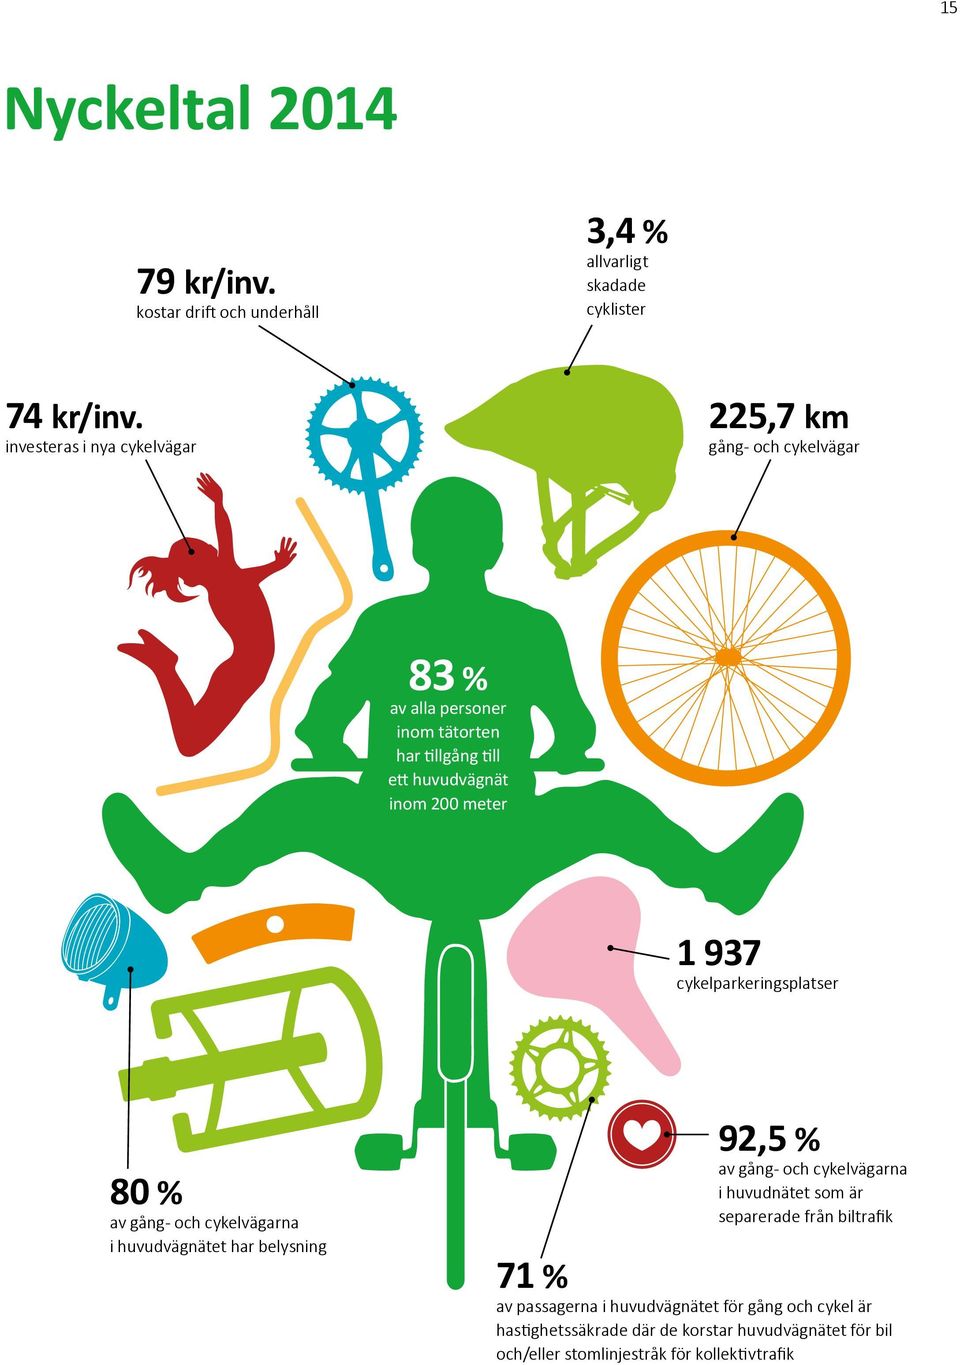 1 937 cykelparkeringsplatser 80 % av gång- och cykelvägarna i huvudvägnätet har belysning 92,5 % av gång- och cykelvägarna i huvudnätet som är